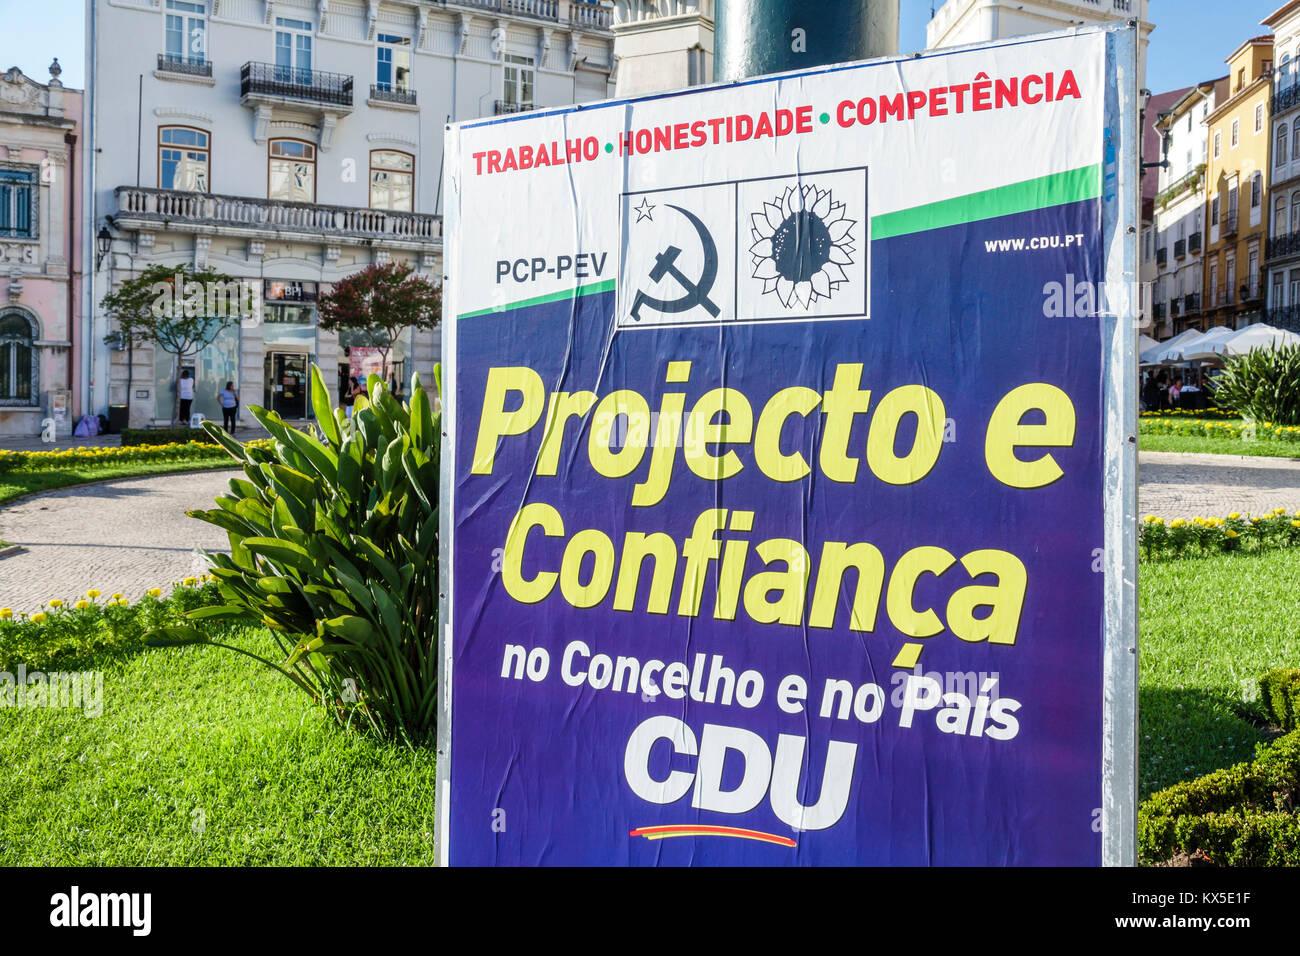 Coimbra Portugal,historic center,Largo da Portagem,main square,political poster,PCP,PEV,Portuguese Communist Party,campaigning,billboard,Hispanic,immi Stock Photo